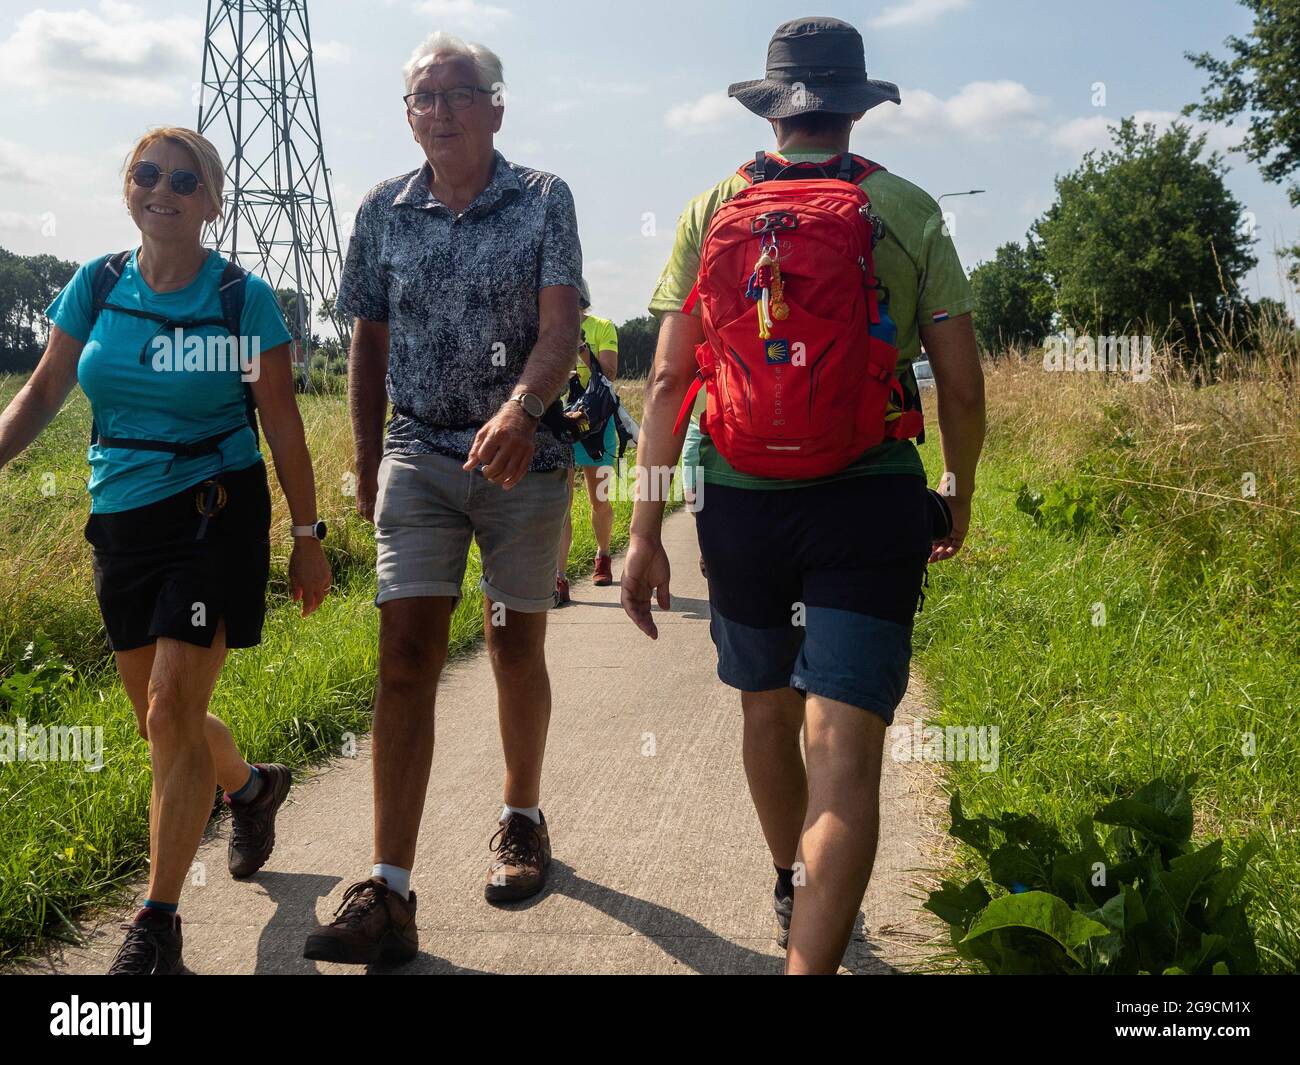 20 de julio de 2021, Nijmegen, Países Bajos: Los participantes vieron caminar durante el evento. El Vierdaagse, también conocido como el International Four Days Marches, el evento de caminata de varios días más grande del mundo que se celebraría cada año, pero debido a la situación de salud actual, por segundo año consecutivo, el evento fue cancelado. Sin embargo, el KWBN (Koninklijke Wandel Bond Nederland) organizó la 'Alternativa Vierdaagse', a la que todos podían unirse, eligiendo una distancia entre 10 y 50 km, y una ruta en algún lugar de los Países Bajos. La participación en las Marcas Alternativas de Cuatro Días es gratuita. Es Foto de stock